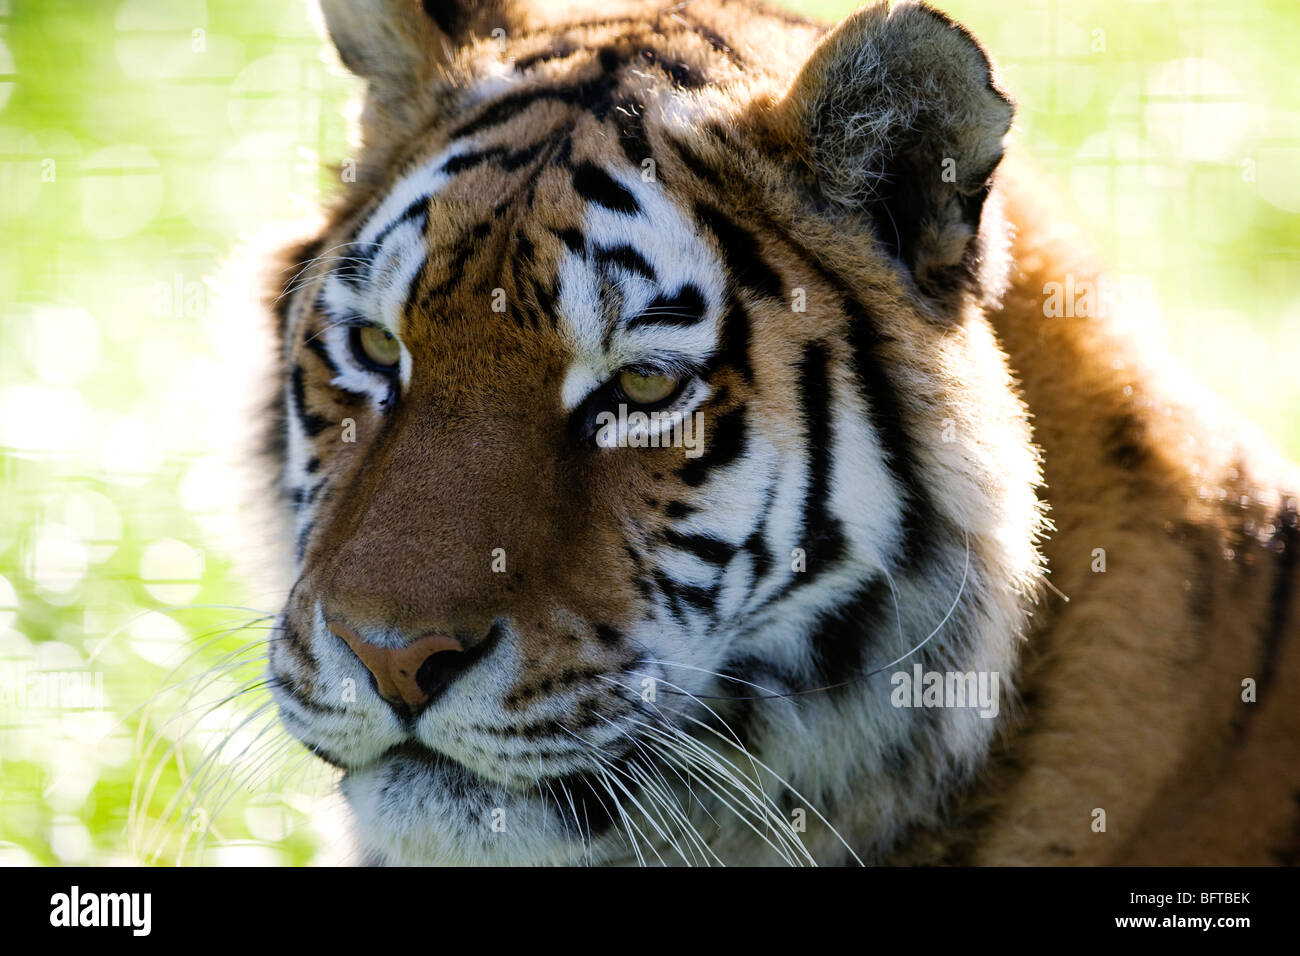 Un tigre mâle, une espèce en voie de disparition, au zoo de Whipsnade au Royaume-Uni Banque D'Images